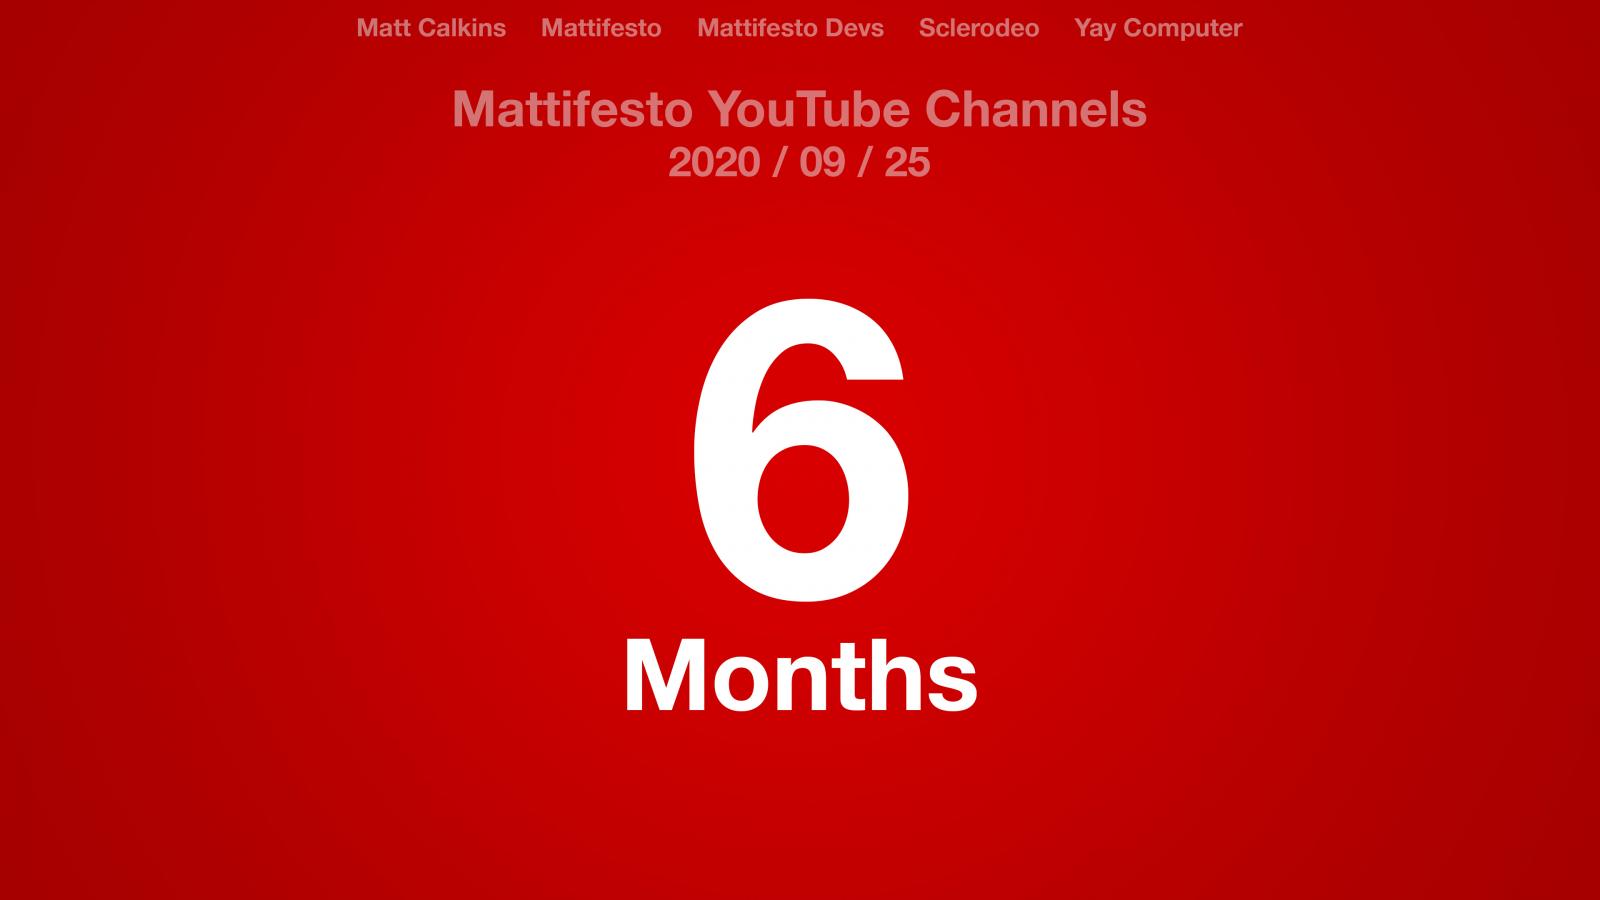 Red radial gradient with the text: Matt Calkins, Mattifesto, Mattifesto Devs, Sclerodeo, Yay Computer, Mattifesto YouTube Channels 2020/09/25 6 Months